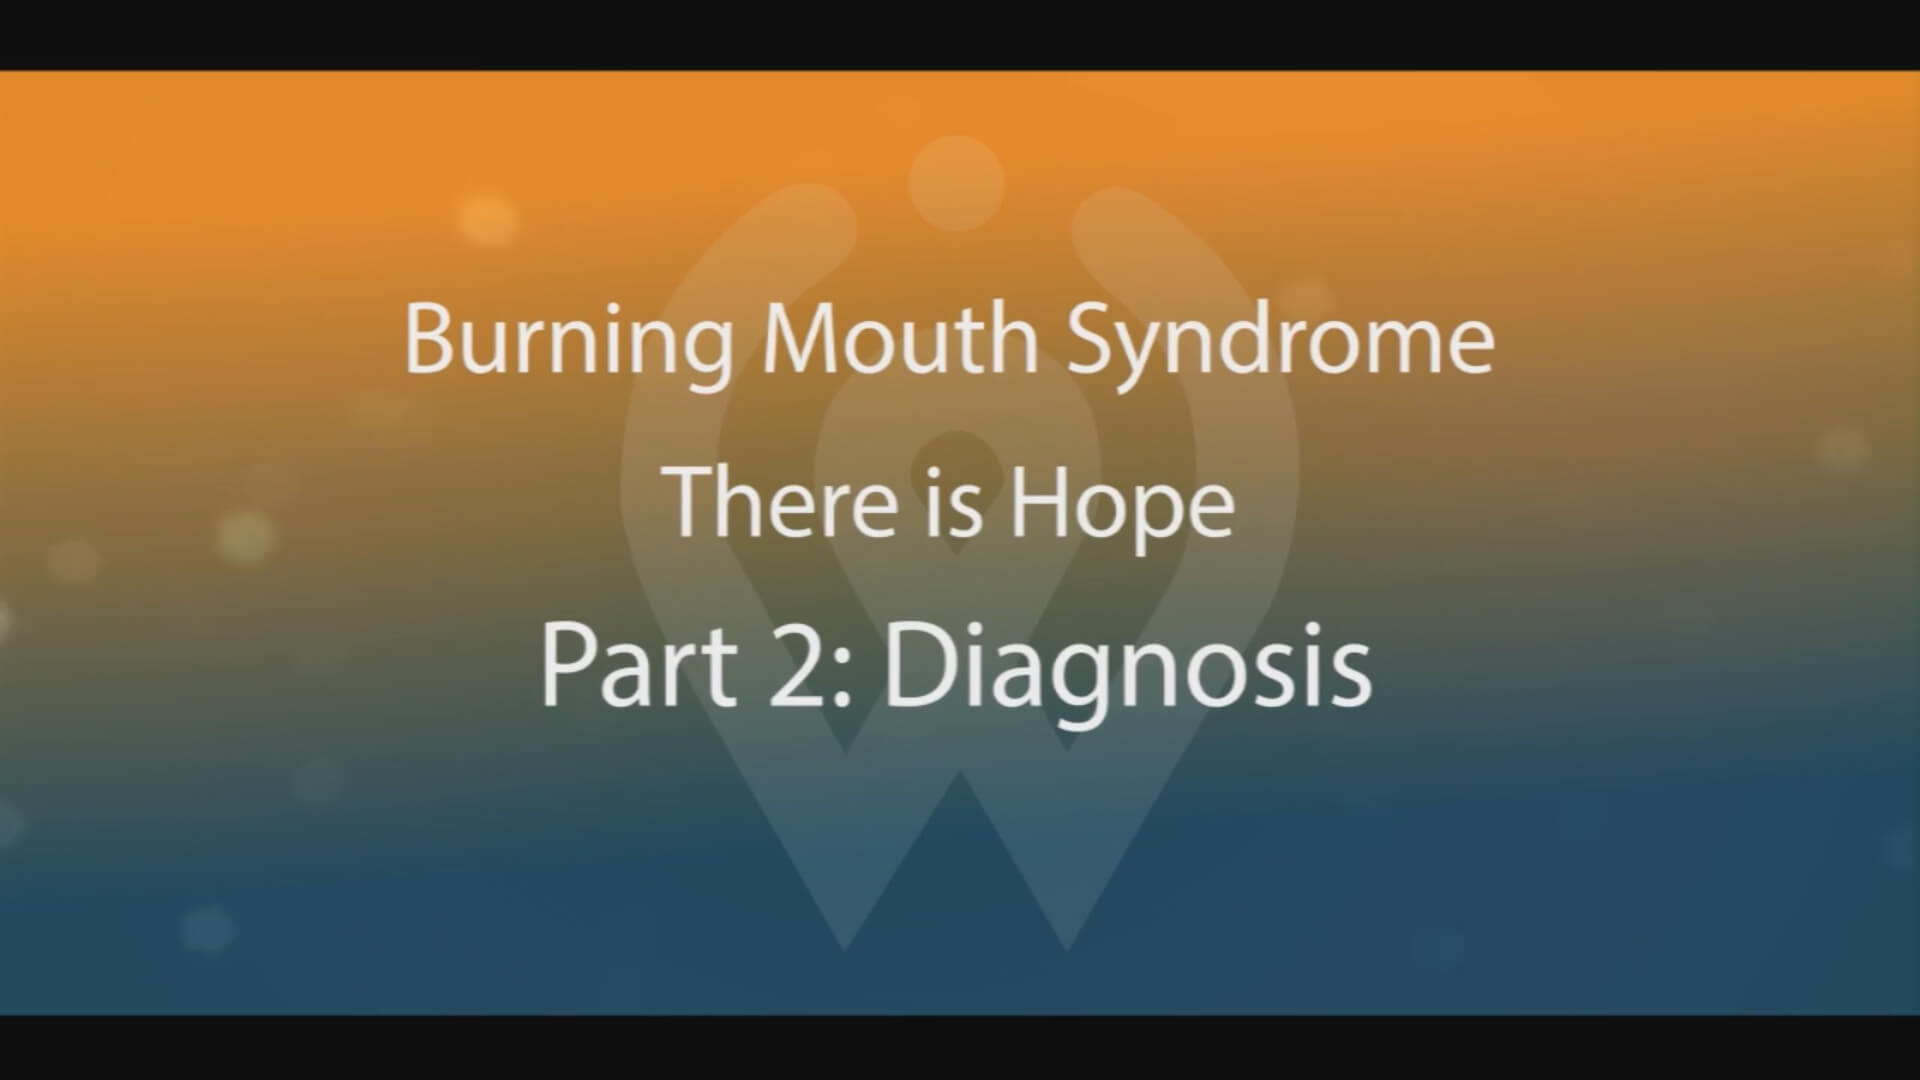 Video Part 2 - Diagnosis